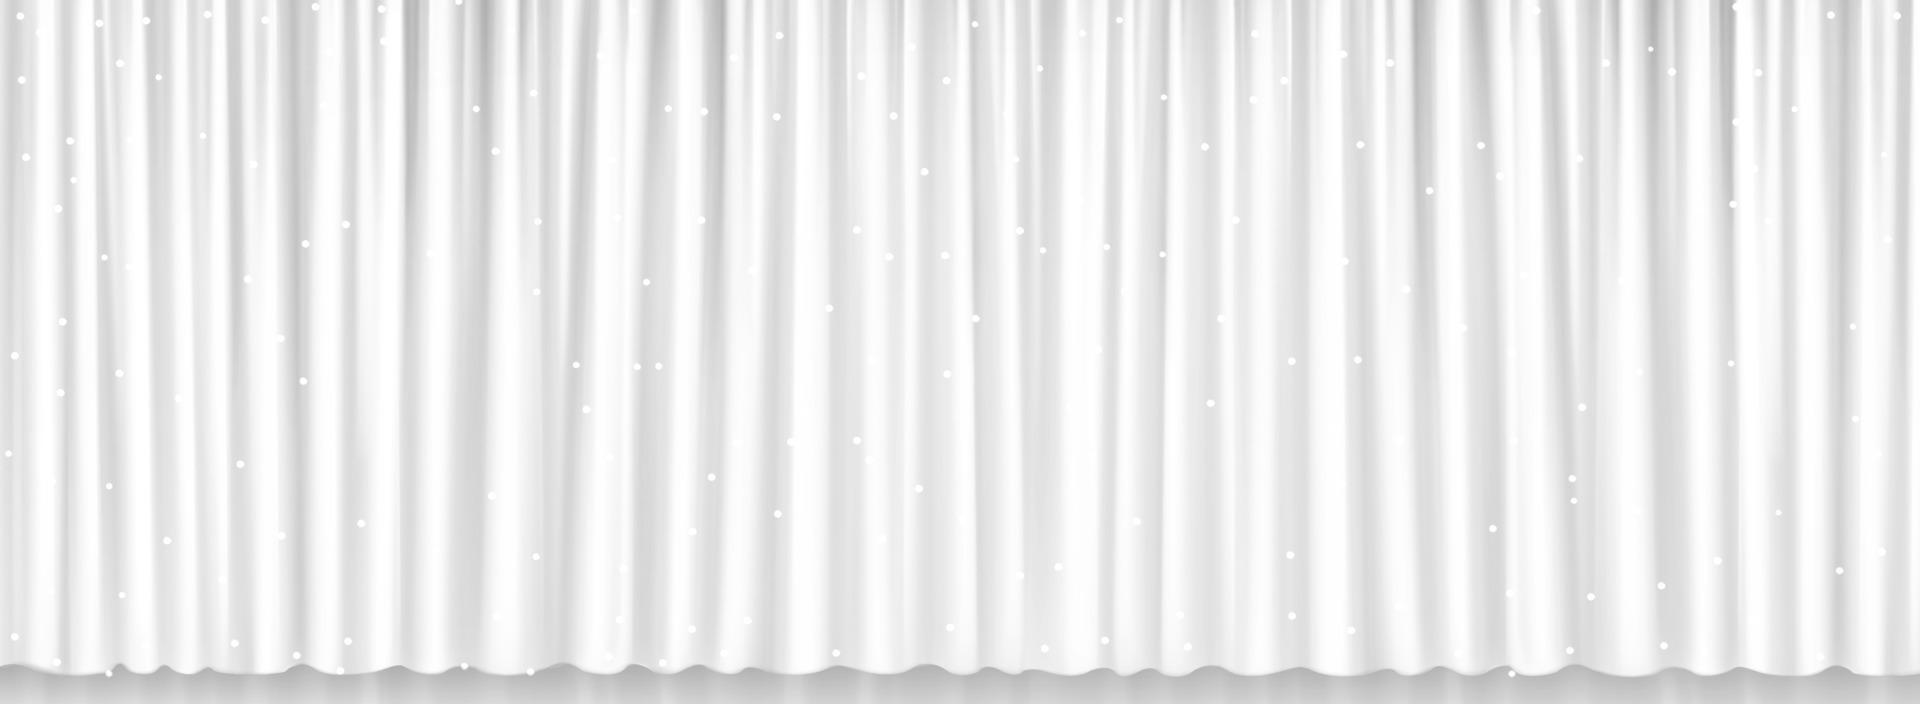 branco cortinas para janela, teatro ou cinema etapa vetor